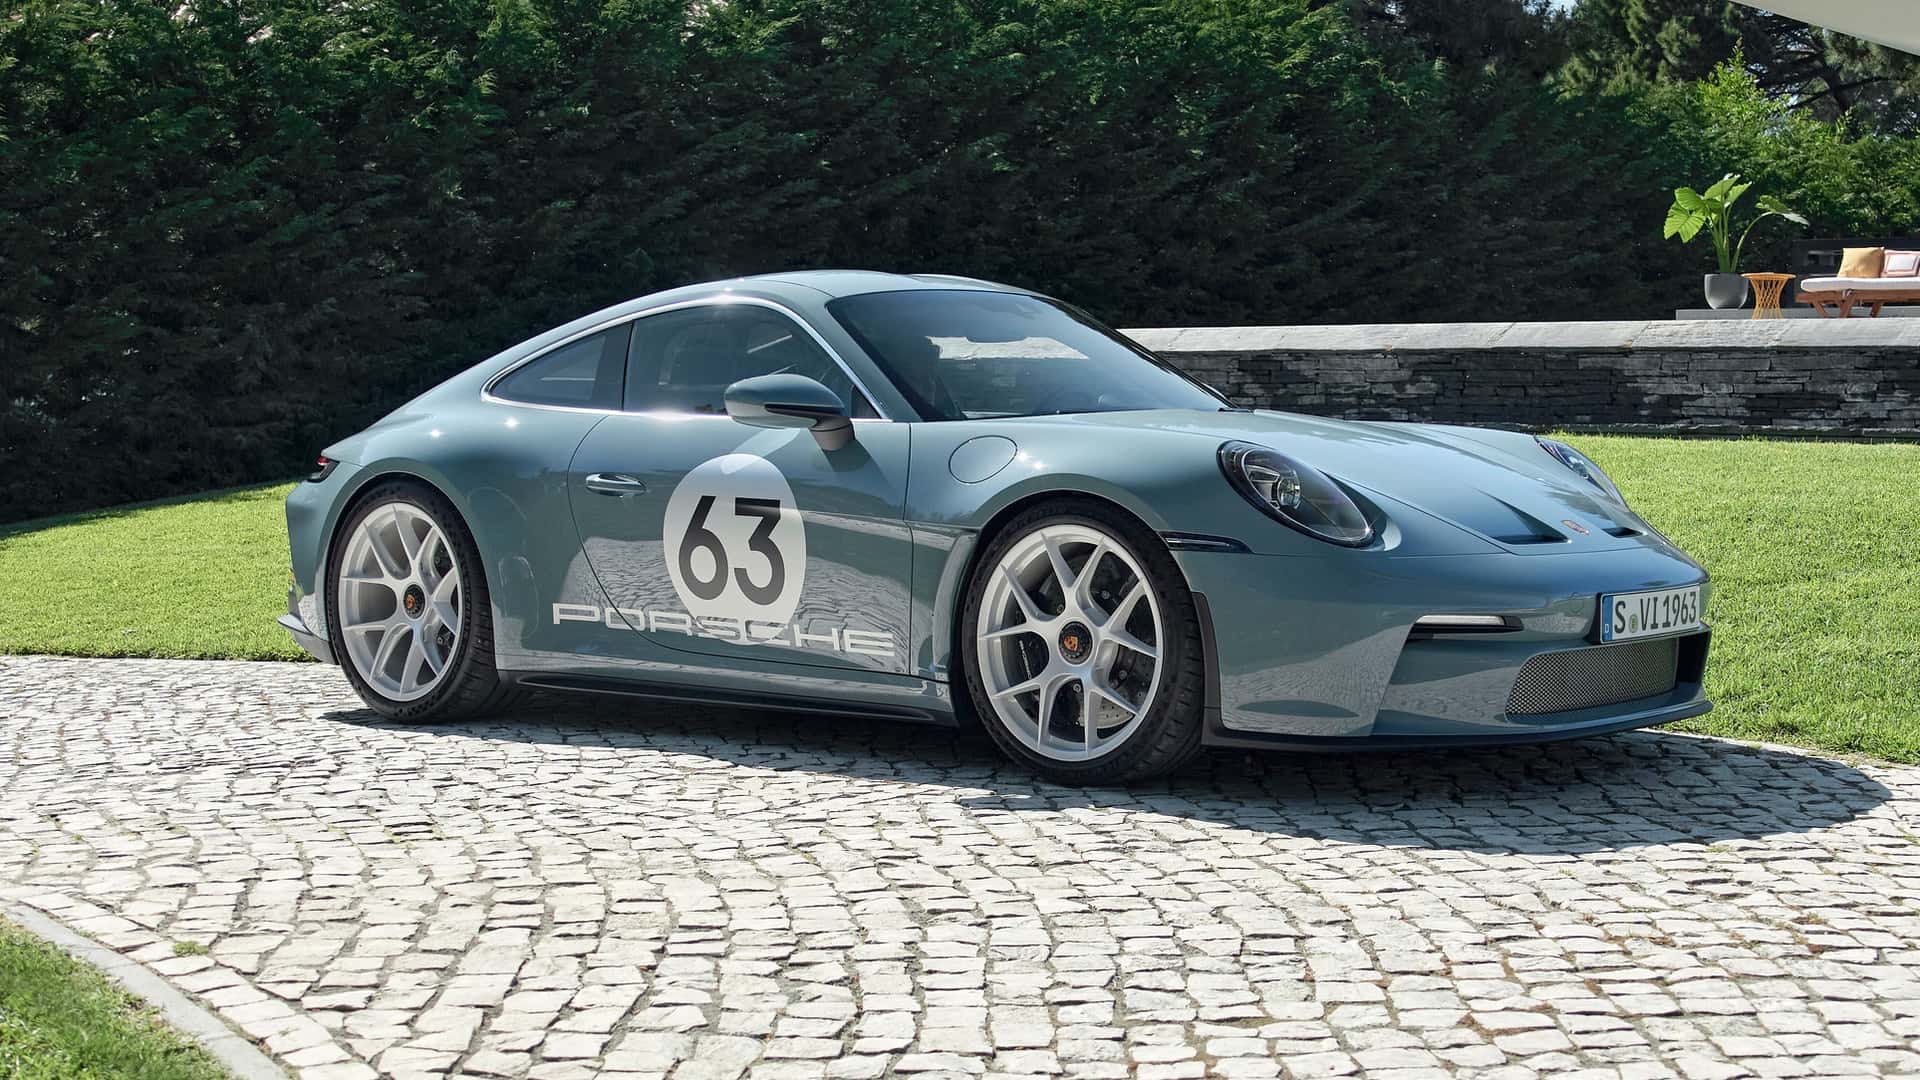 “É disto que são feitos os sonhos” – Porsche apresenta 911 S/T